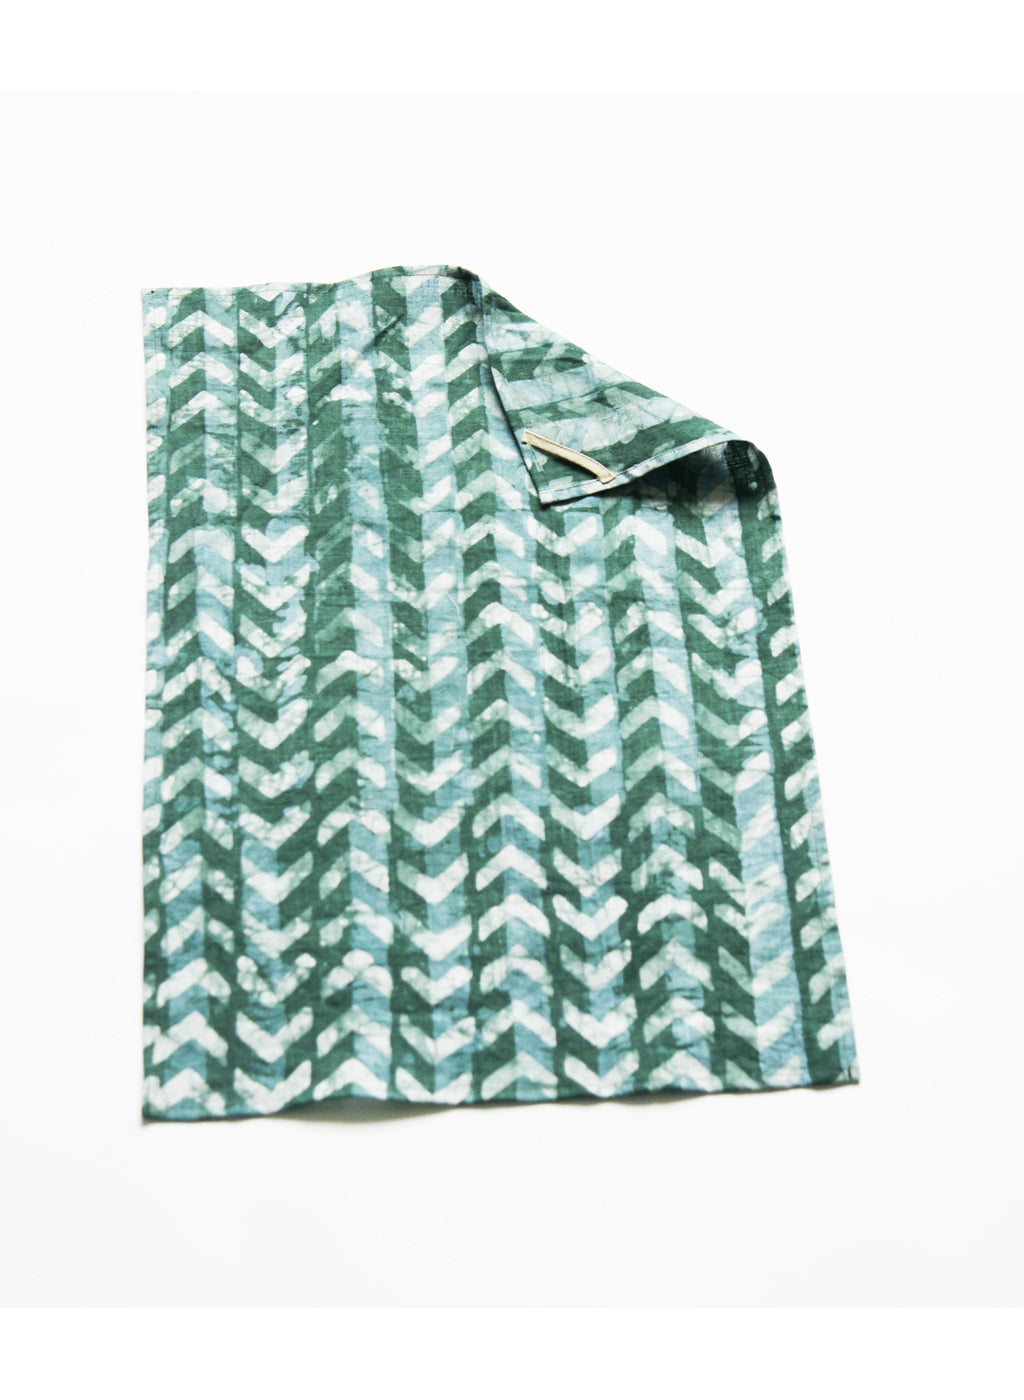 Teal Green Chevron Batik Linen Tea Towel